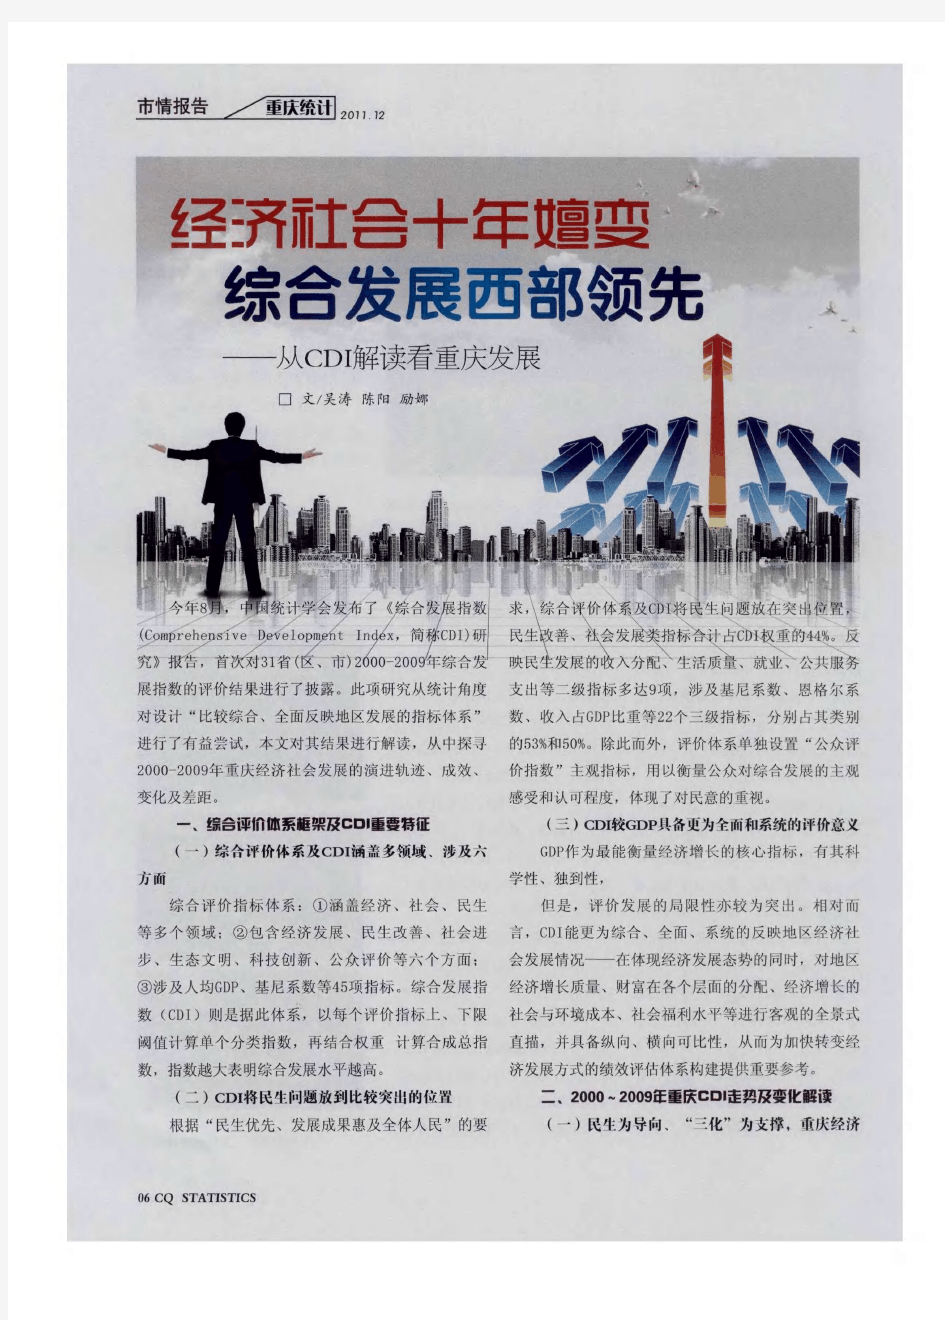 经济社会十年嬗变综合发展西部领先——从CDI解读看重庆发展